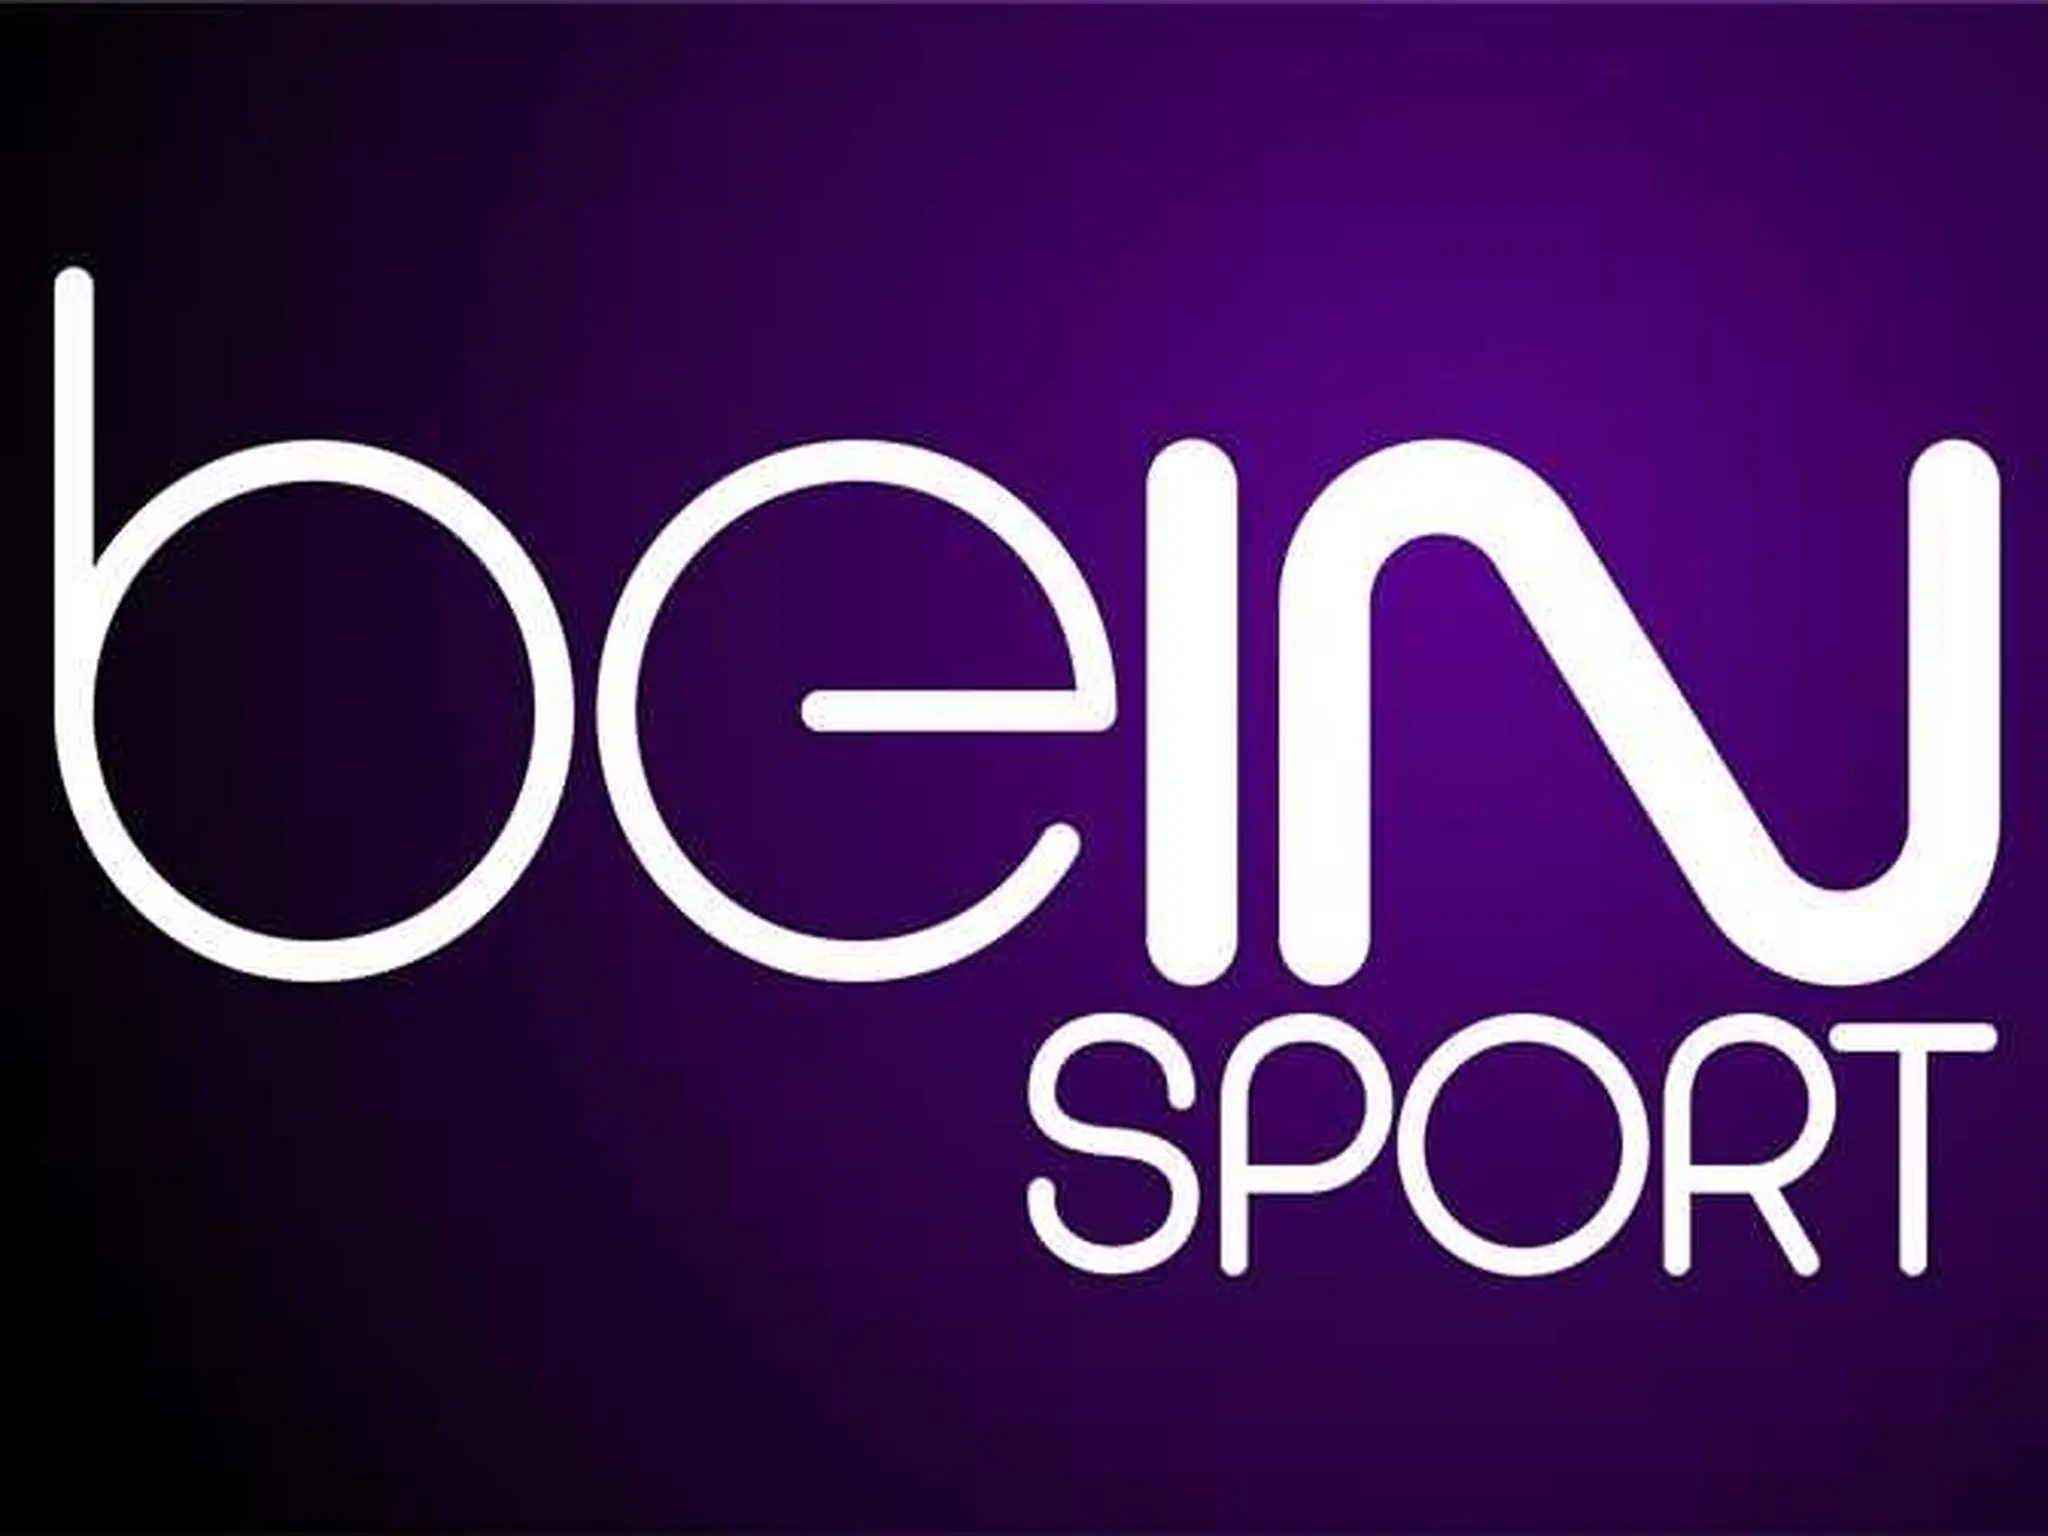 تردد قناة بي ان سبورت ماكس bein sport Max الناقلة لكأس العالم قطر 2022